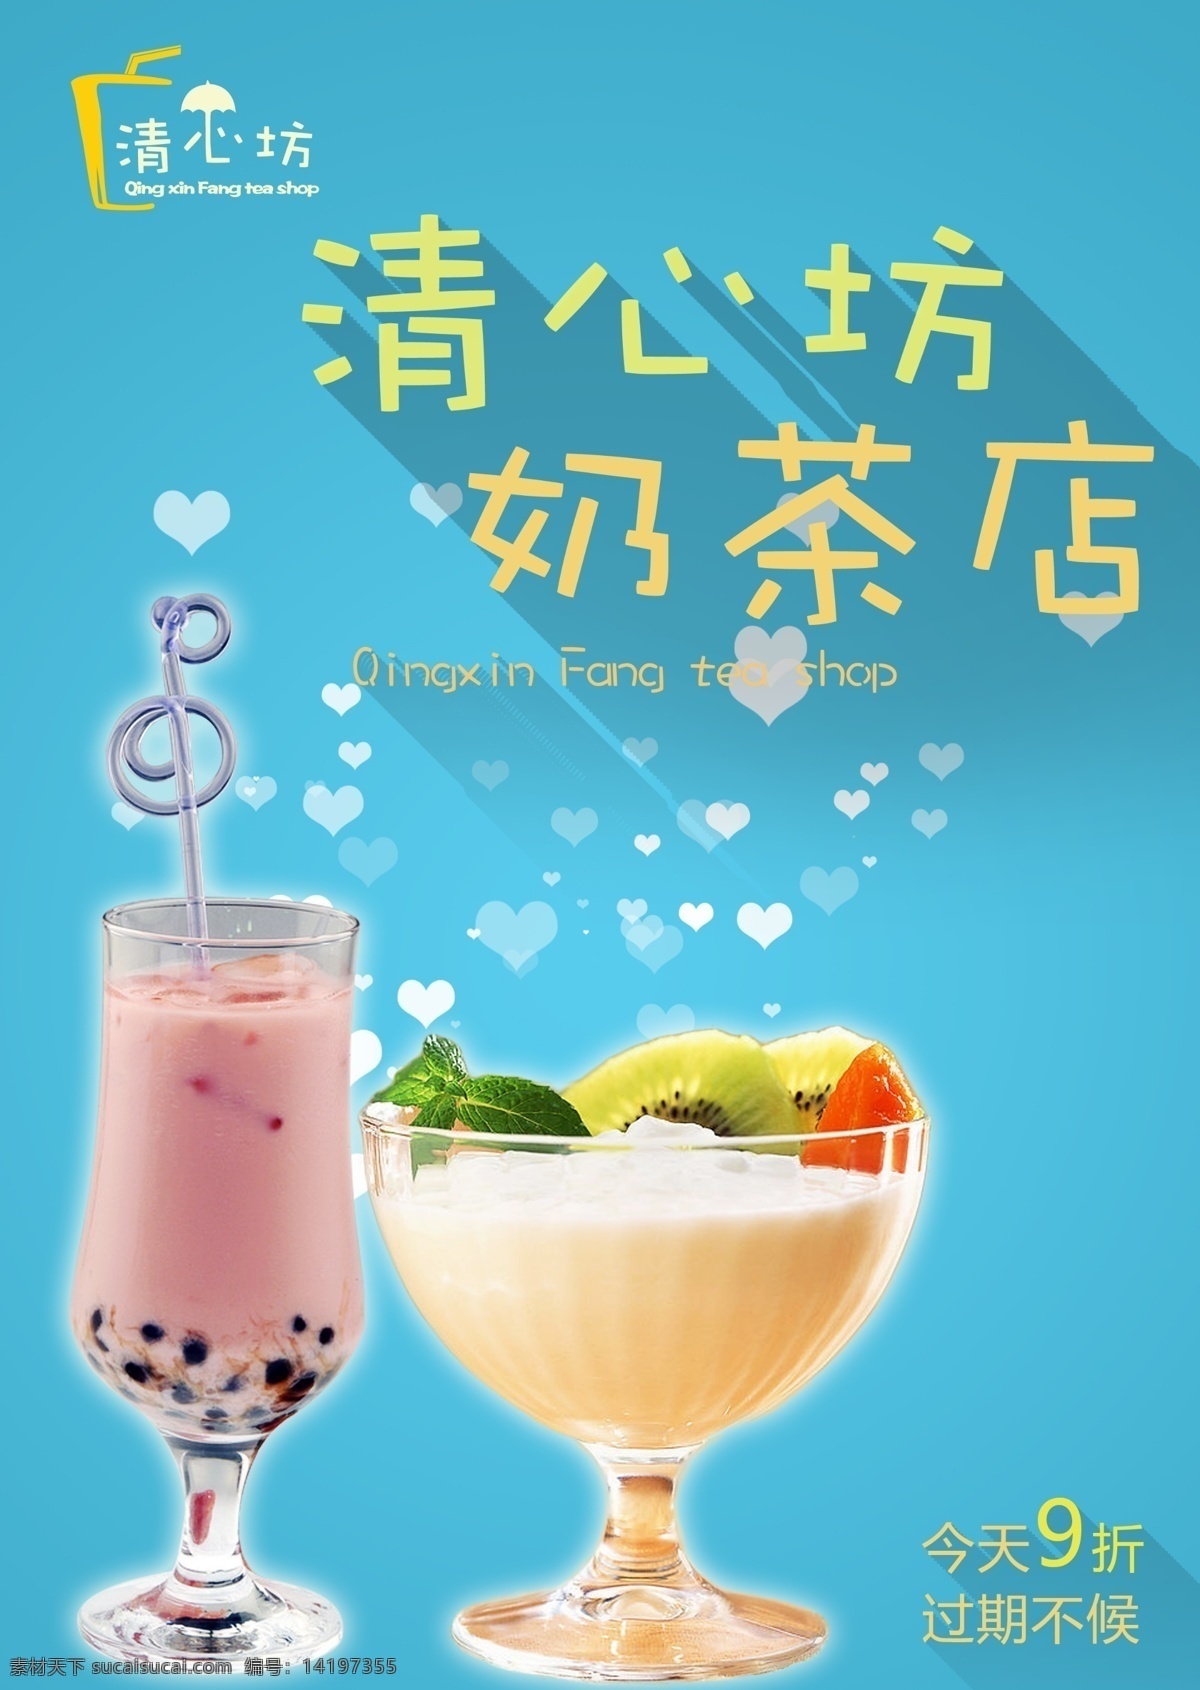 奶茶店 推广 9折 活动 蓝色 小清新 原创设计 原创海报